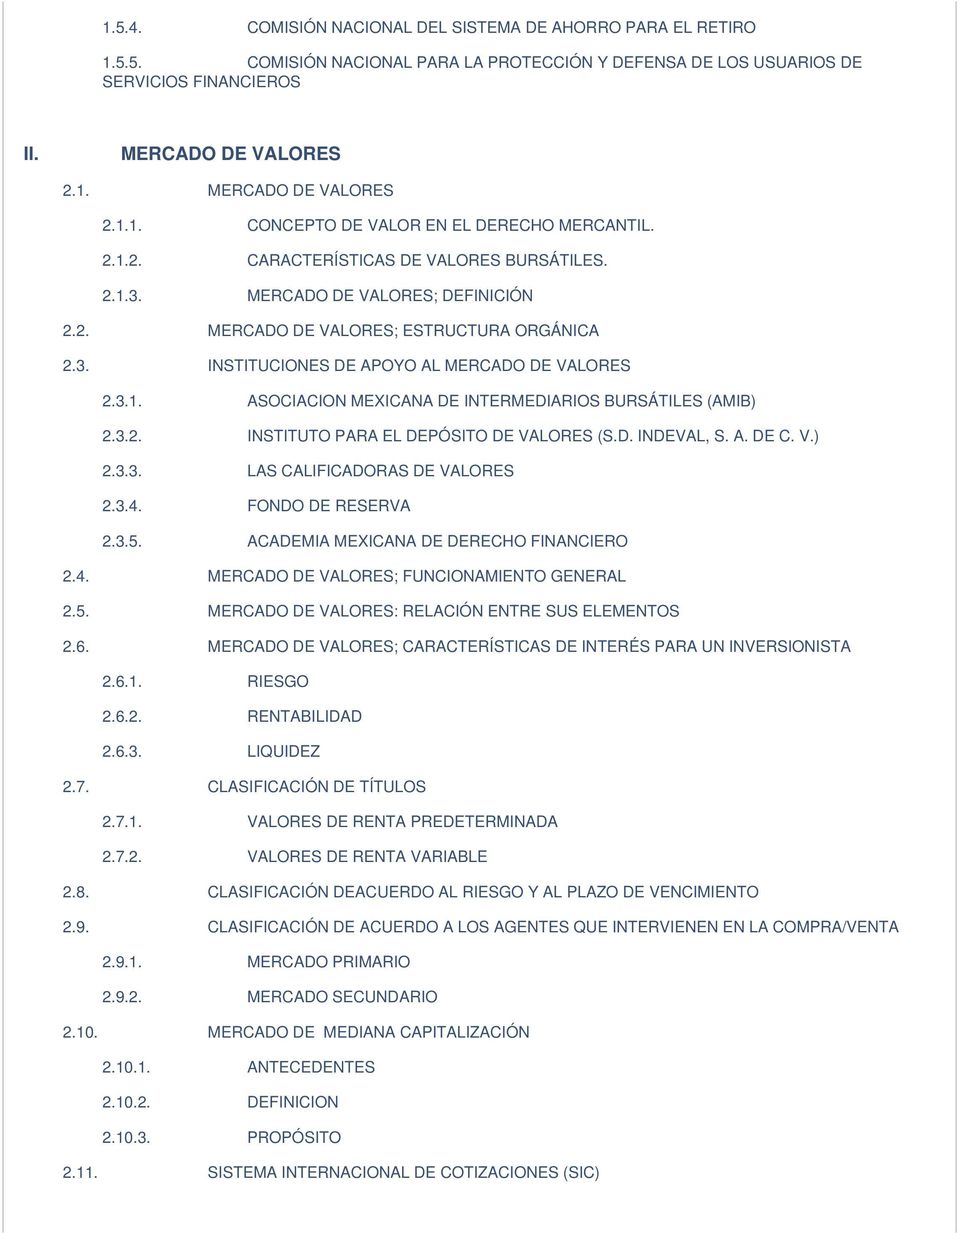 3.2. INSTITUTO PARA EL DEPÓSITO DE VALORES (S.D. INDEVAL, S. A. DE C. V.) 2.3.3. LAS CALIFICADORAS DE VALORES 2.3.4. FONDO DE RESERVA 2.3.5. ACADEMIA MEXICANA DE DERECHO FINANCIERO 2.4. MERCADO DE VALORES; FUNCIONAMIENTO GENERAL 2.